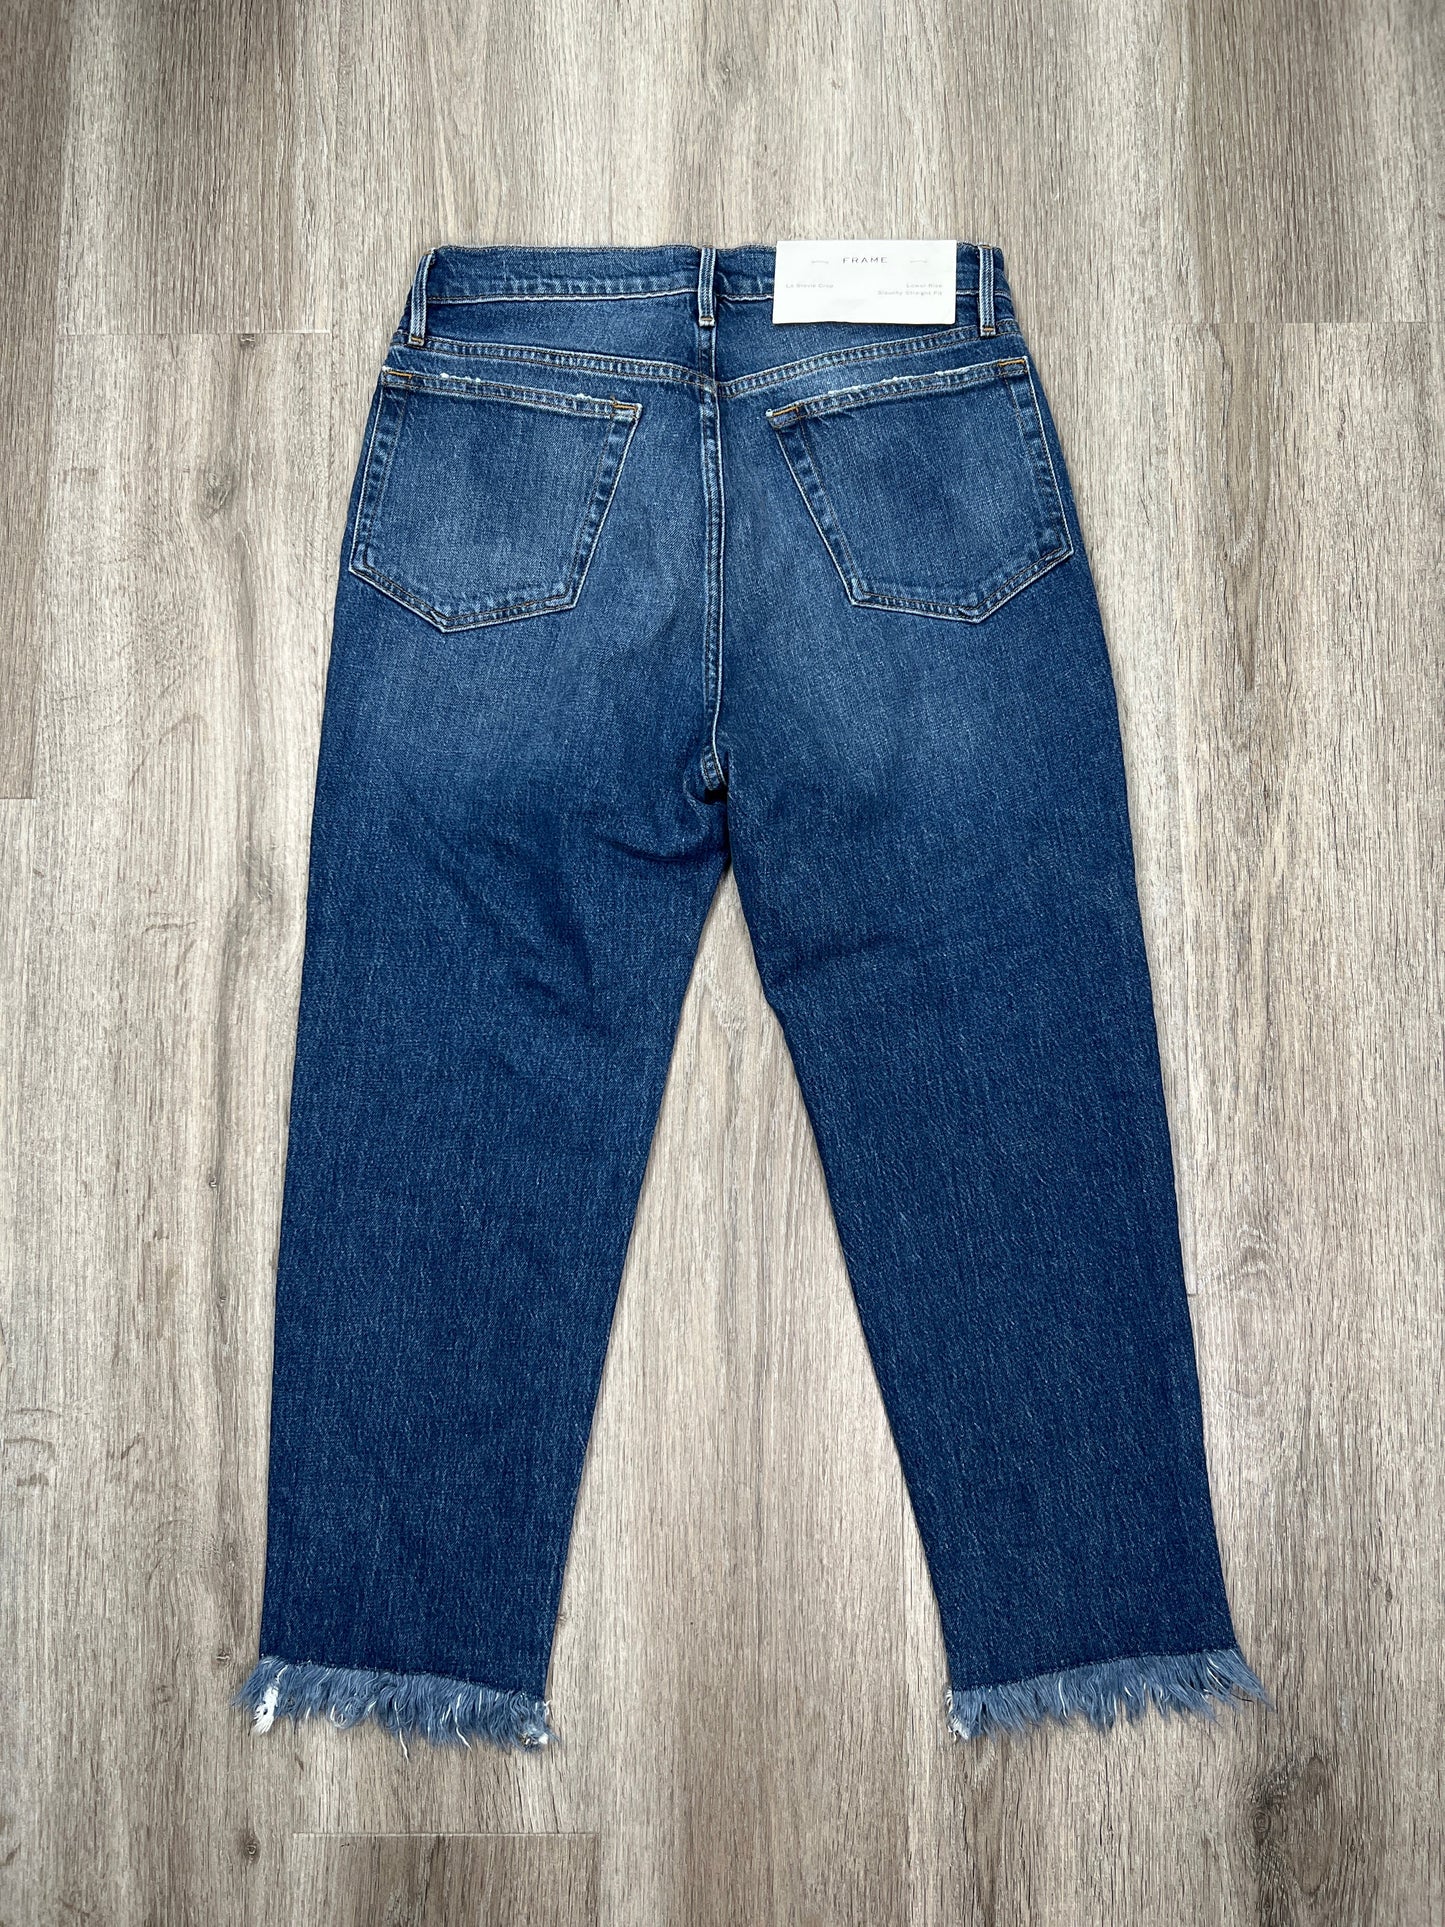 Blue Denim Jeans Cropped Frame, Size 2